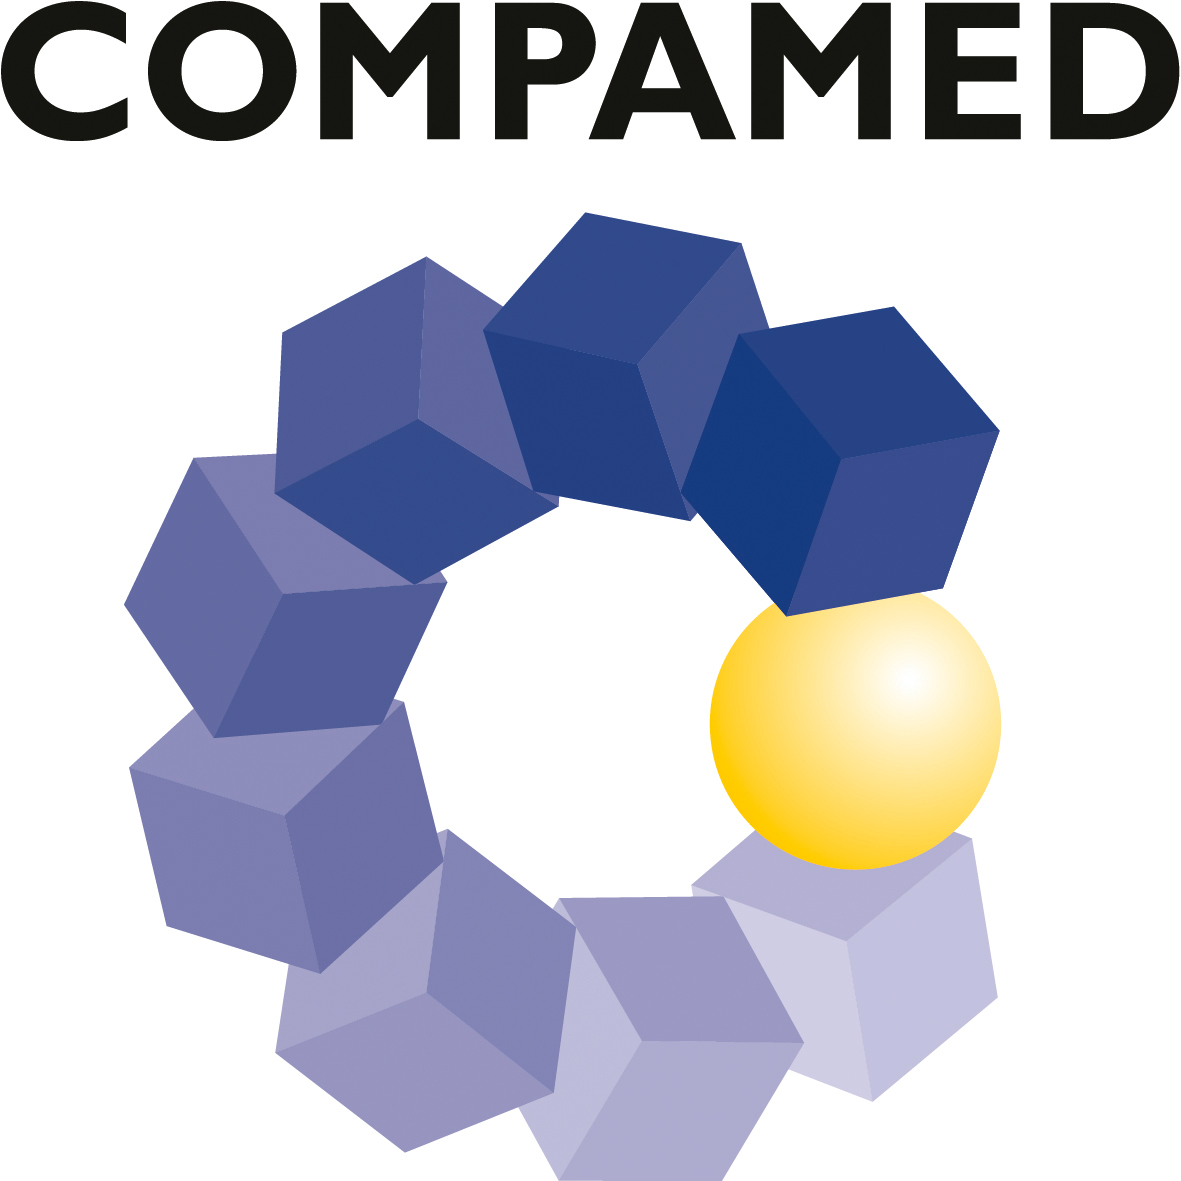 Eine Abbildung des Logos der Messe COMPAMED